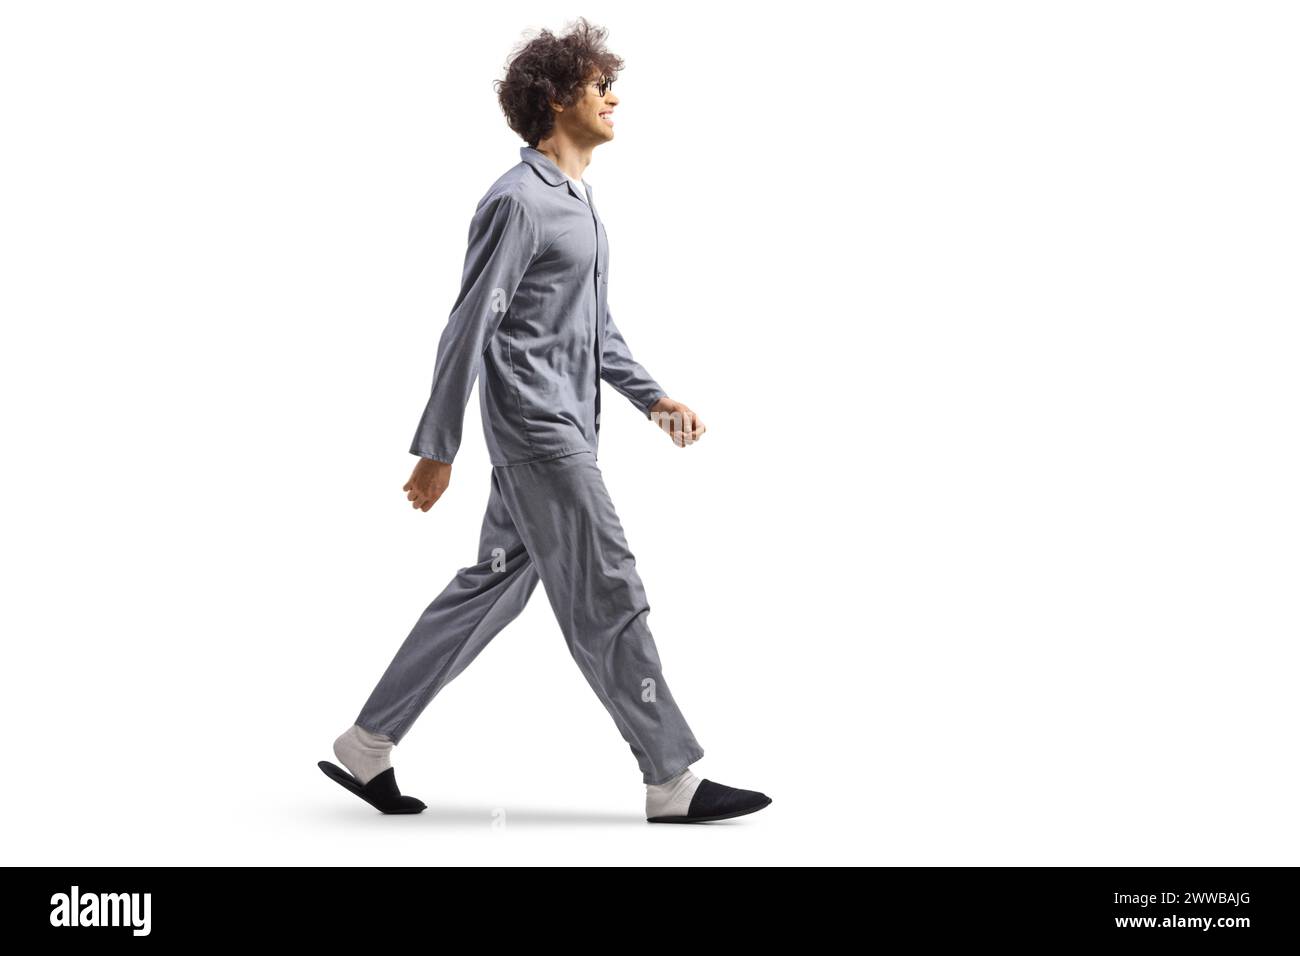 Plan de profil pleine longueur d'un jeune homme en pyjama et pantoufles marchant isolé sur fond blanc Banque D'Images